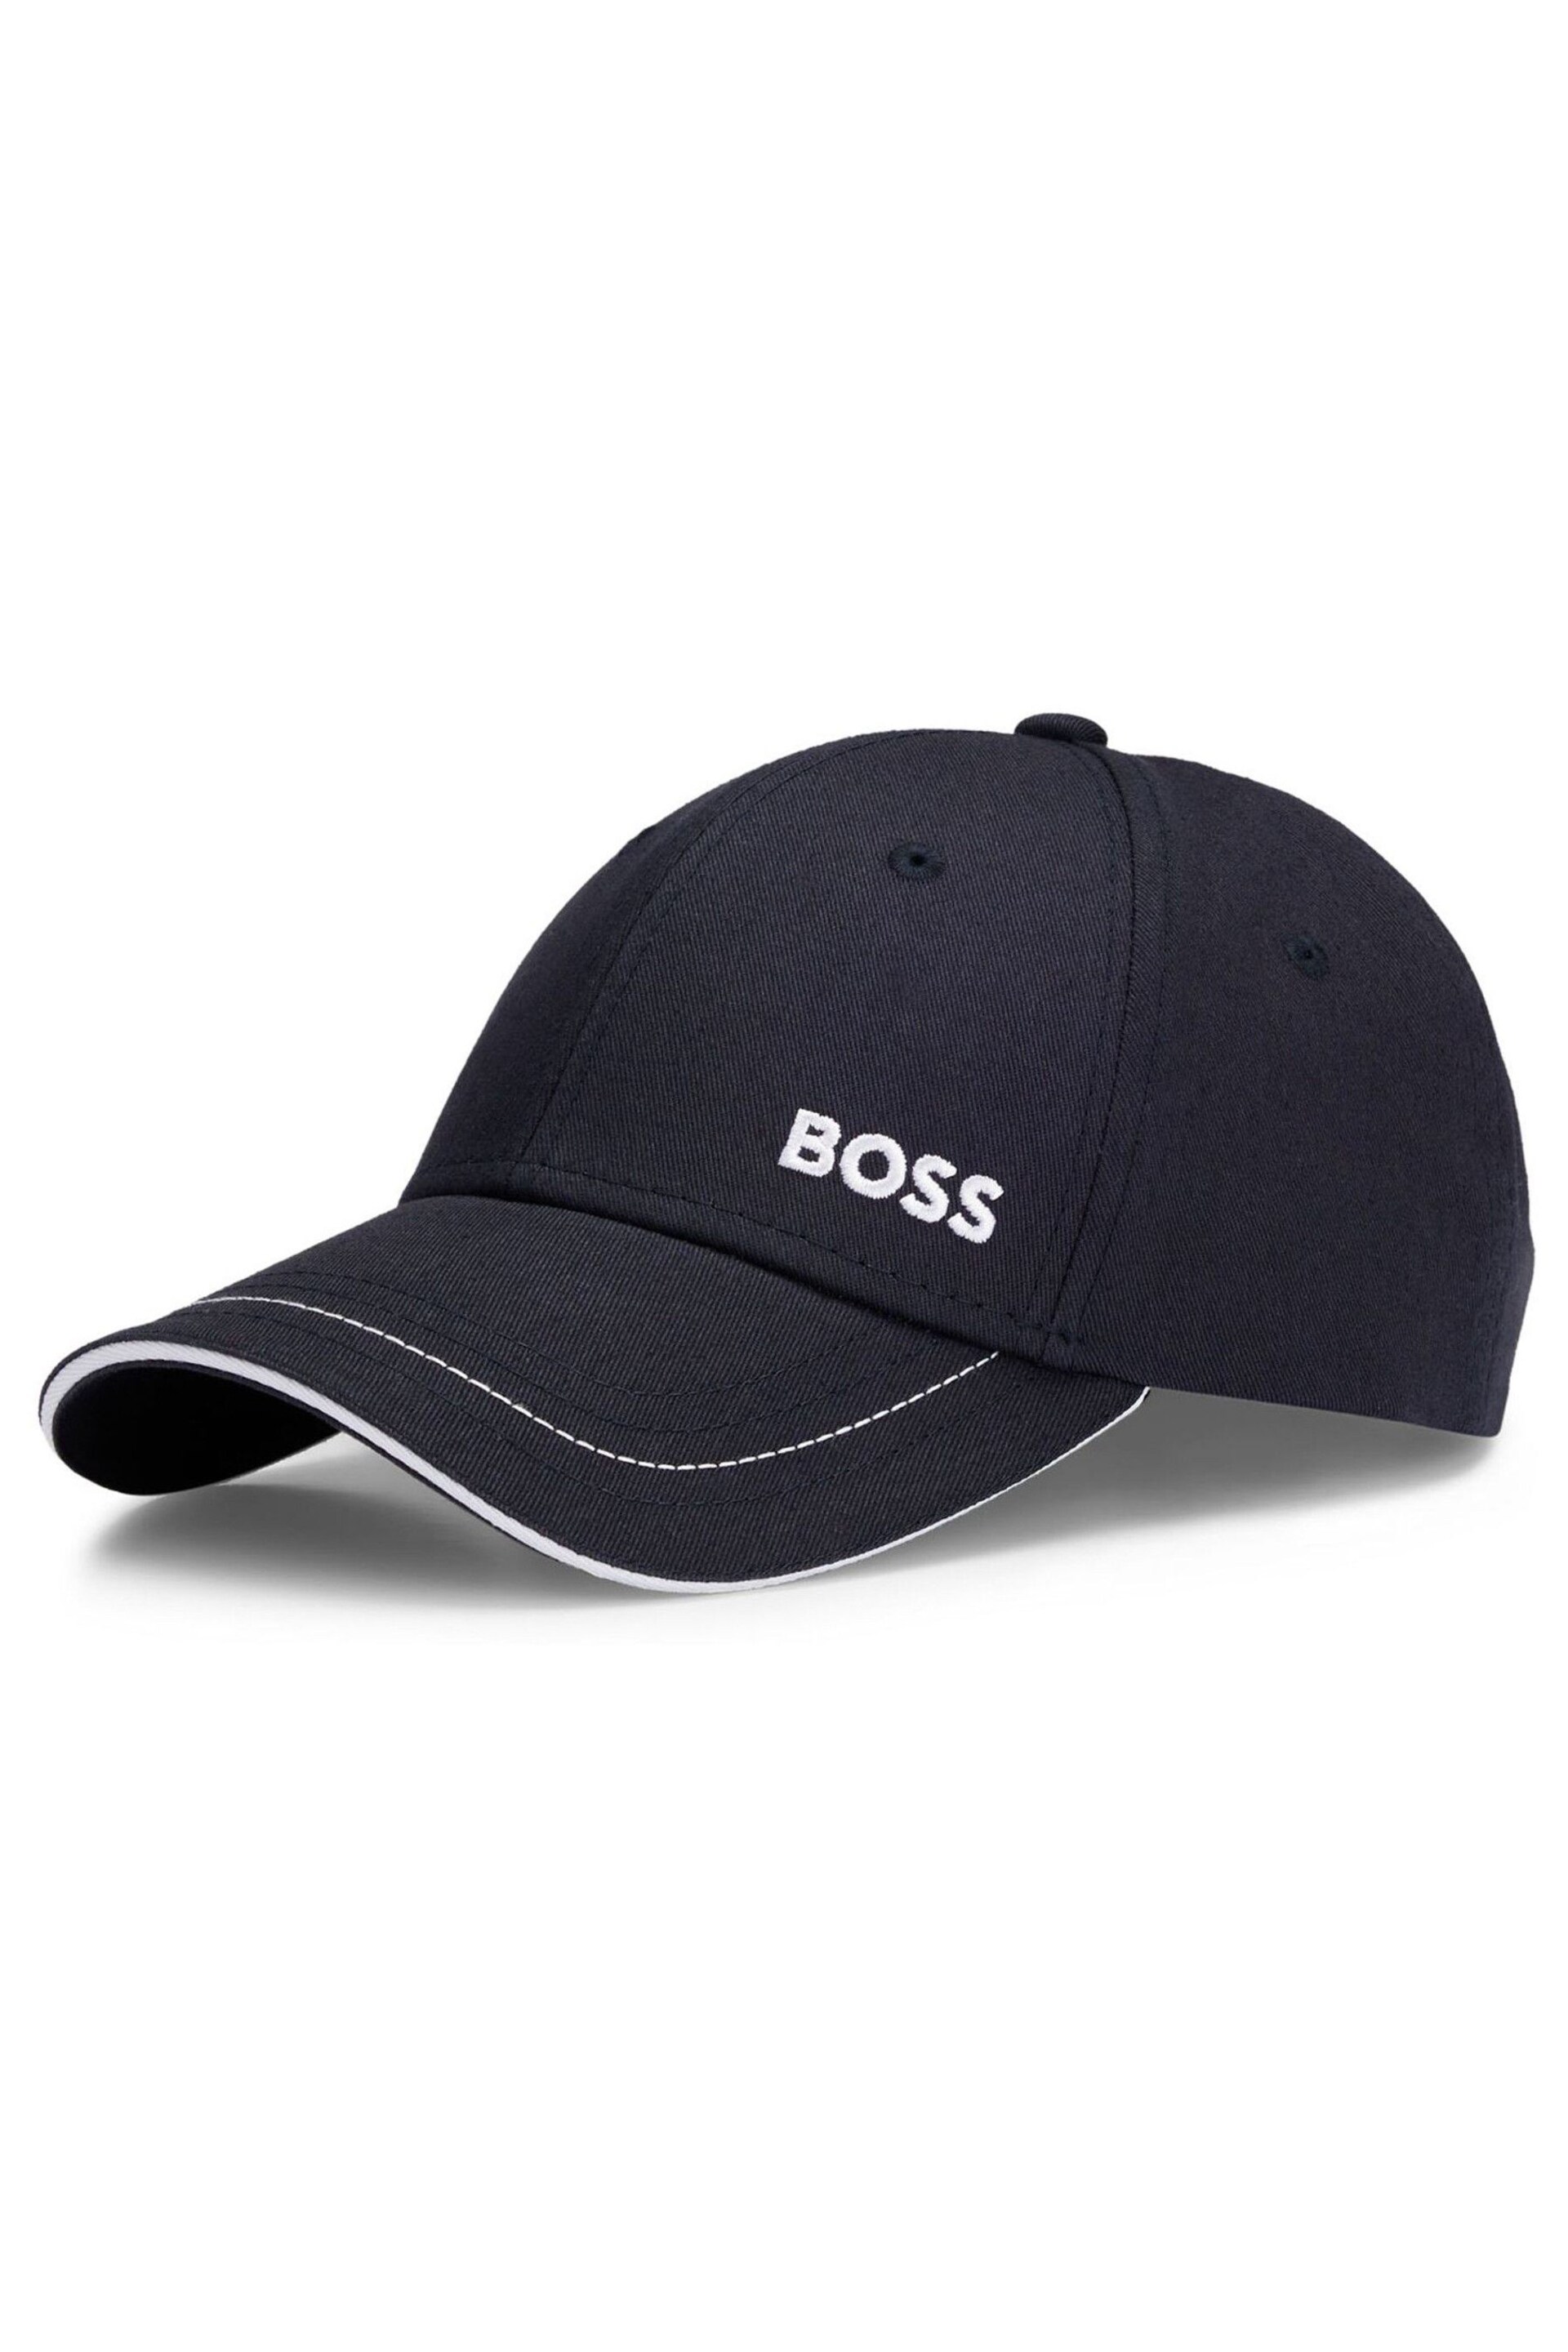 BOSS Blue Printed Logo Cap - Image 3 of 5